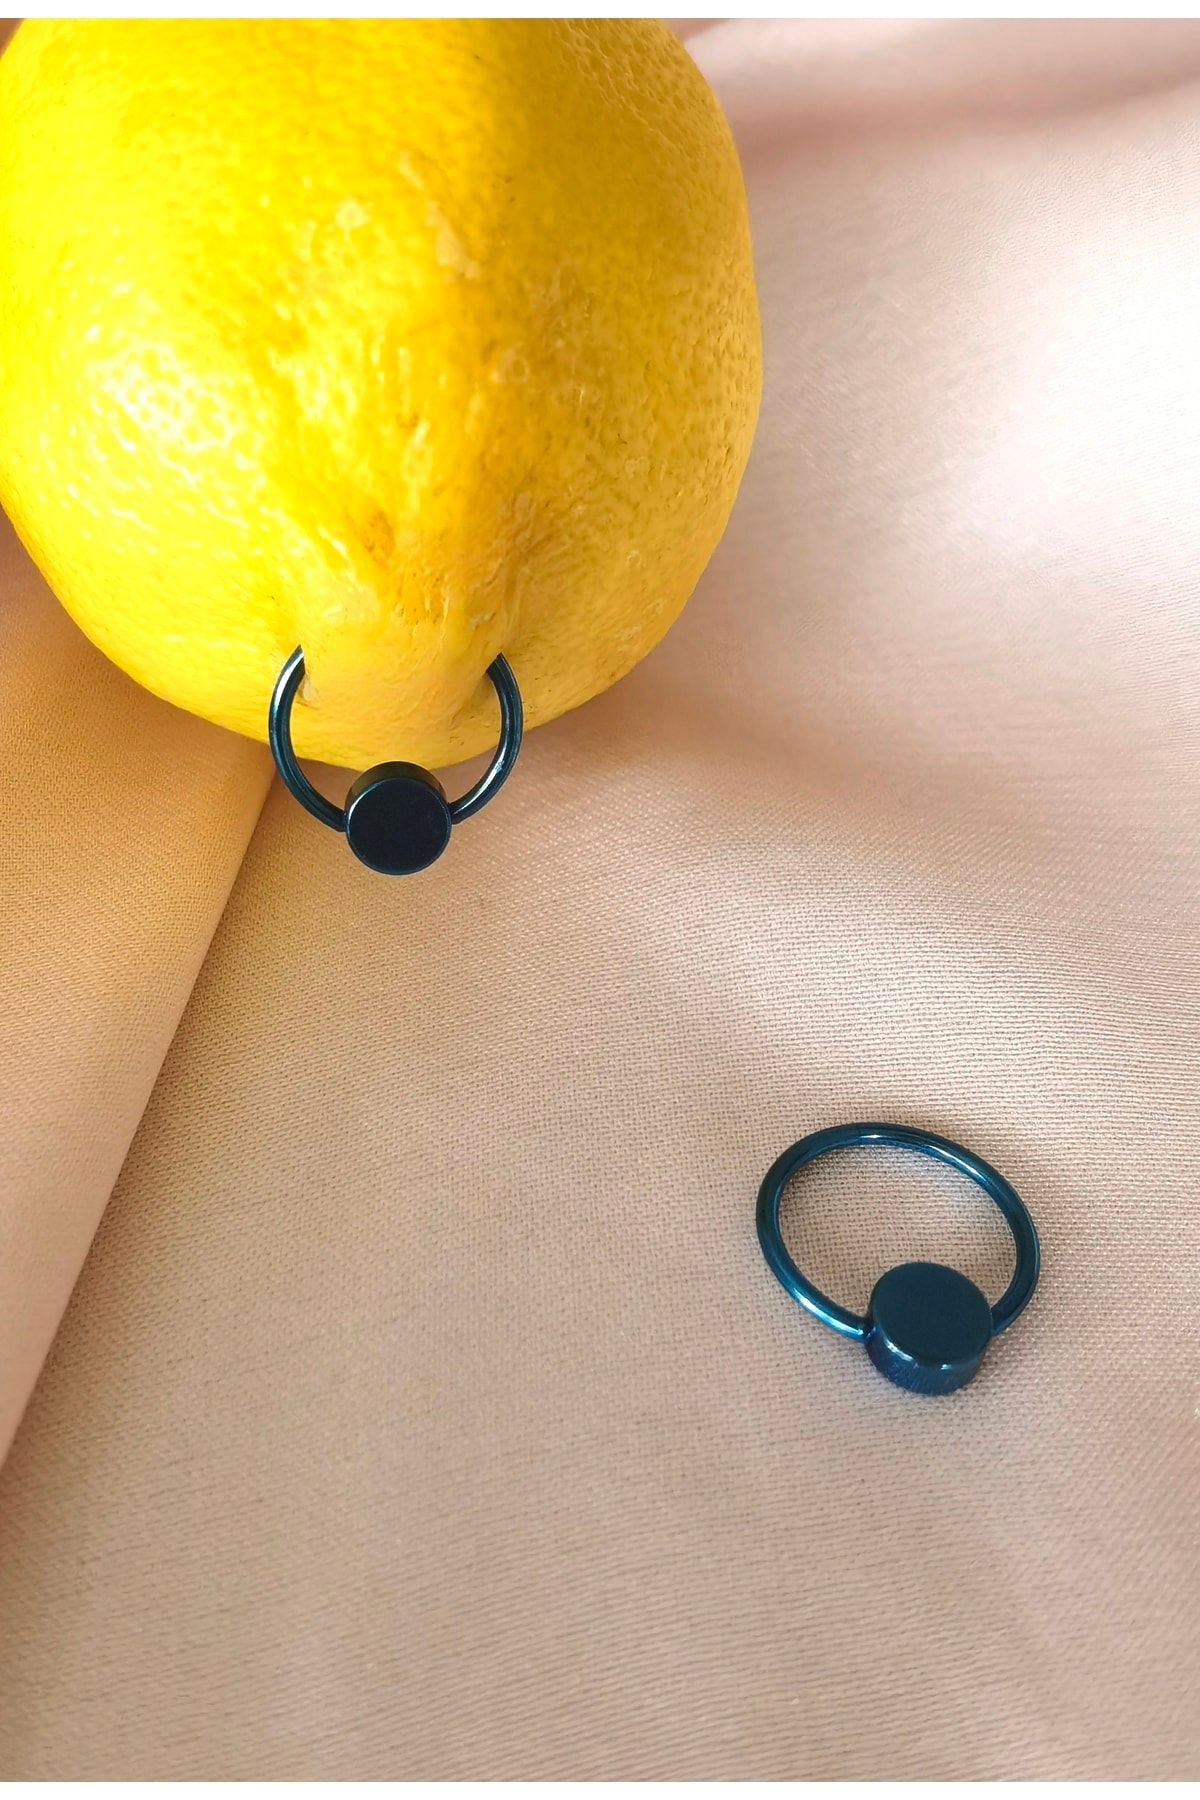 Bylin Cerrahi Çelik Bir Çift Memeucu/nipple Piercing- Kalınlık 1,2 Mm ( 2 Adet)